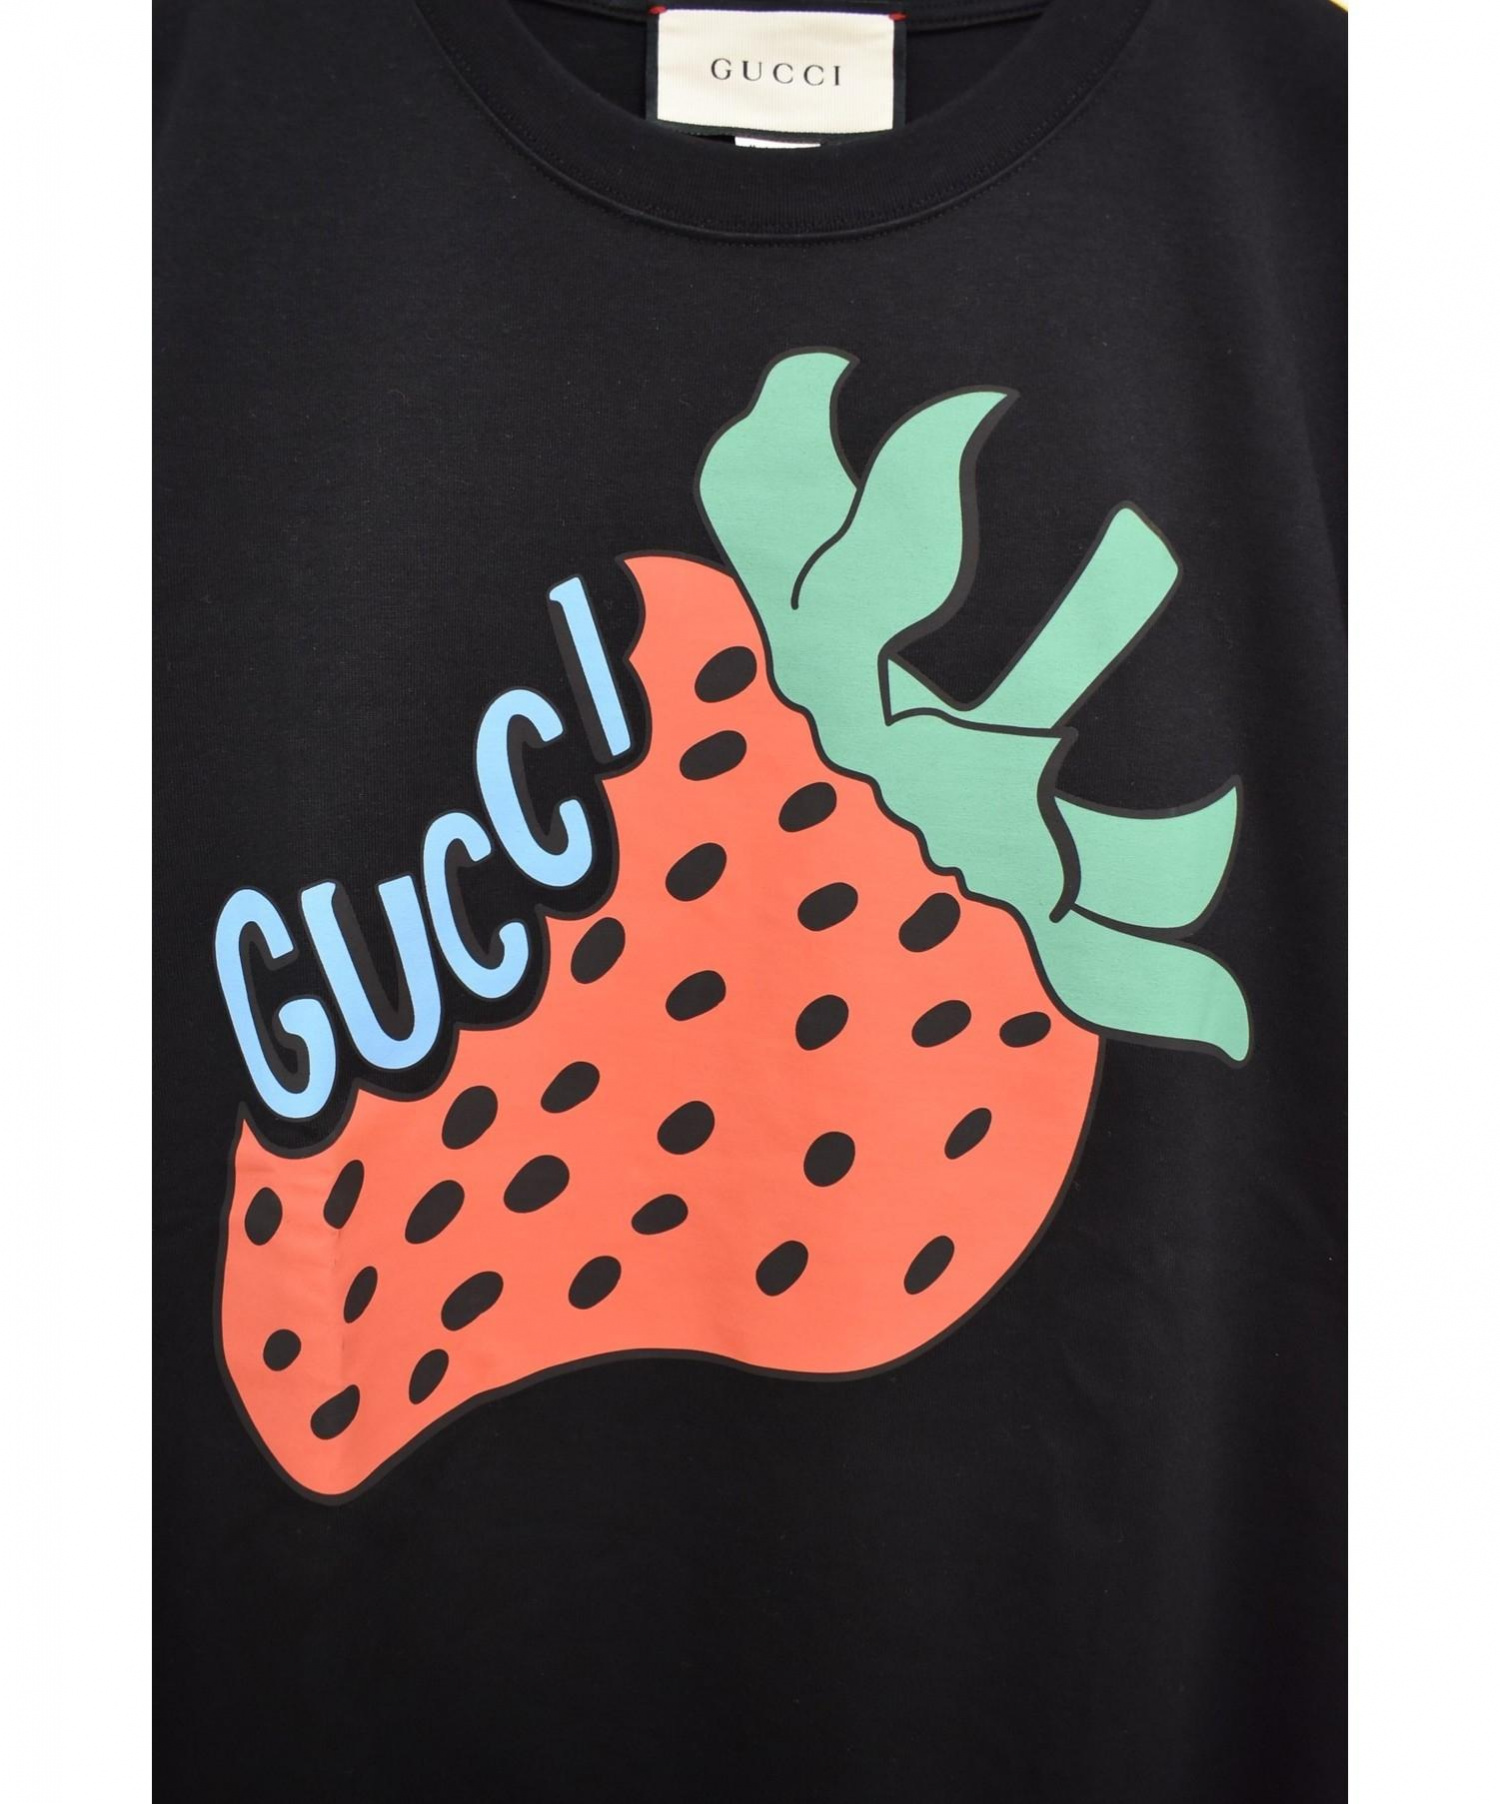 GUCCI (グッチ) ストロベリープリントTシャツ サイズ:XS 2019SS 